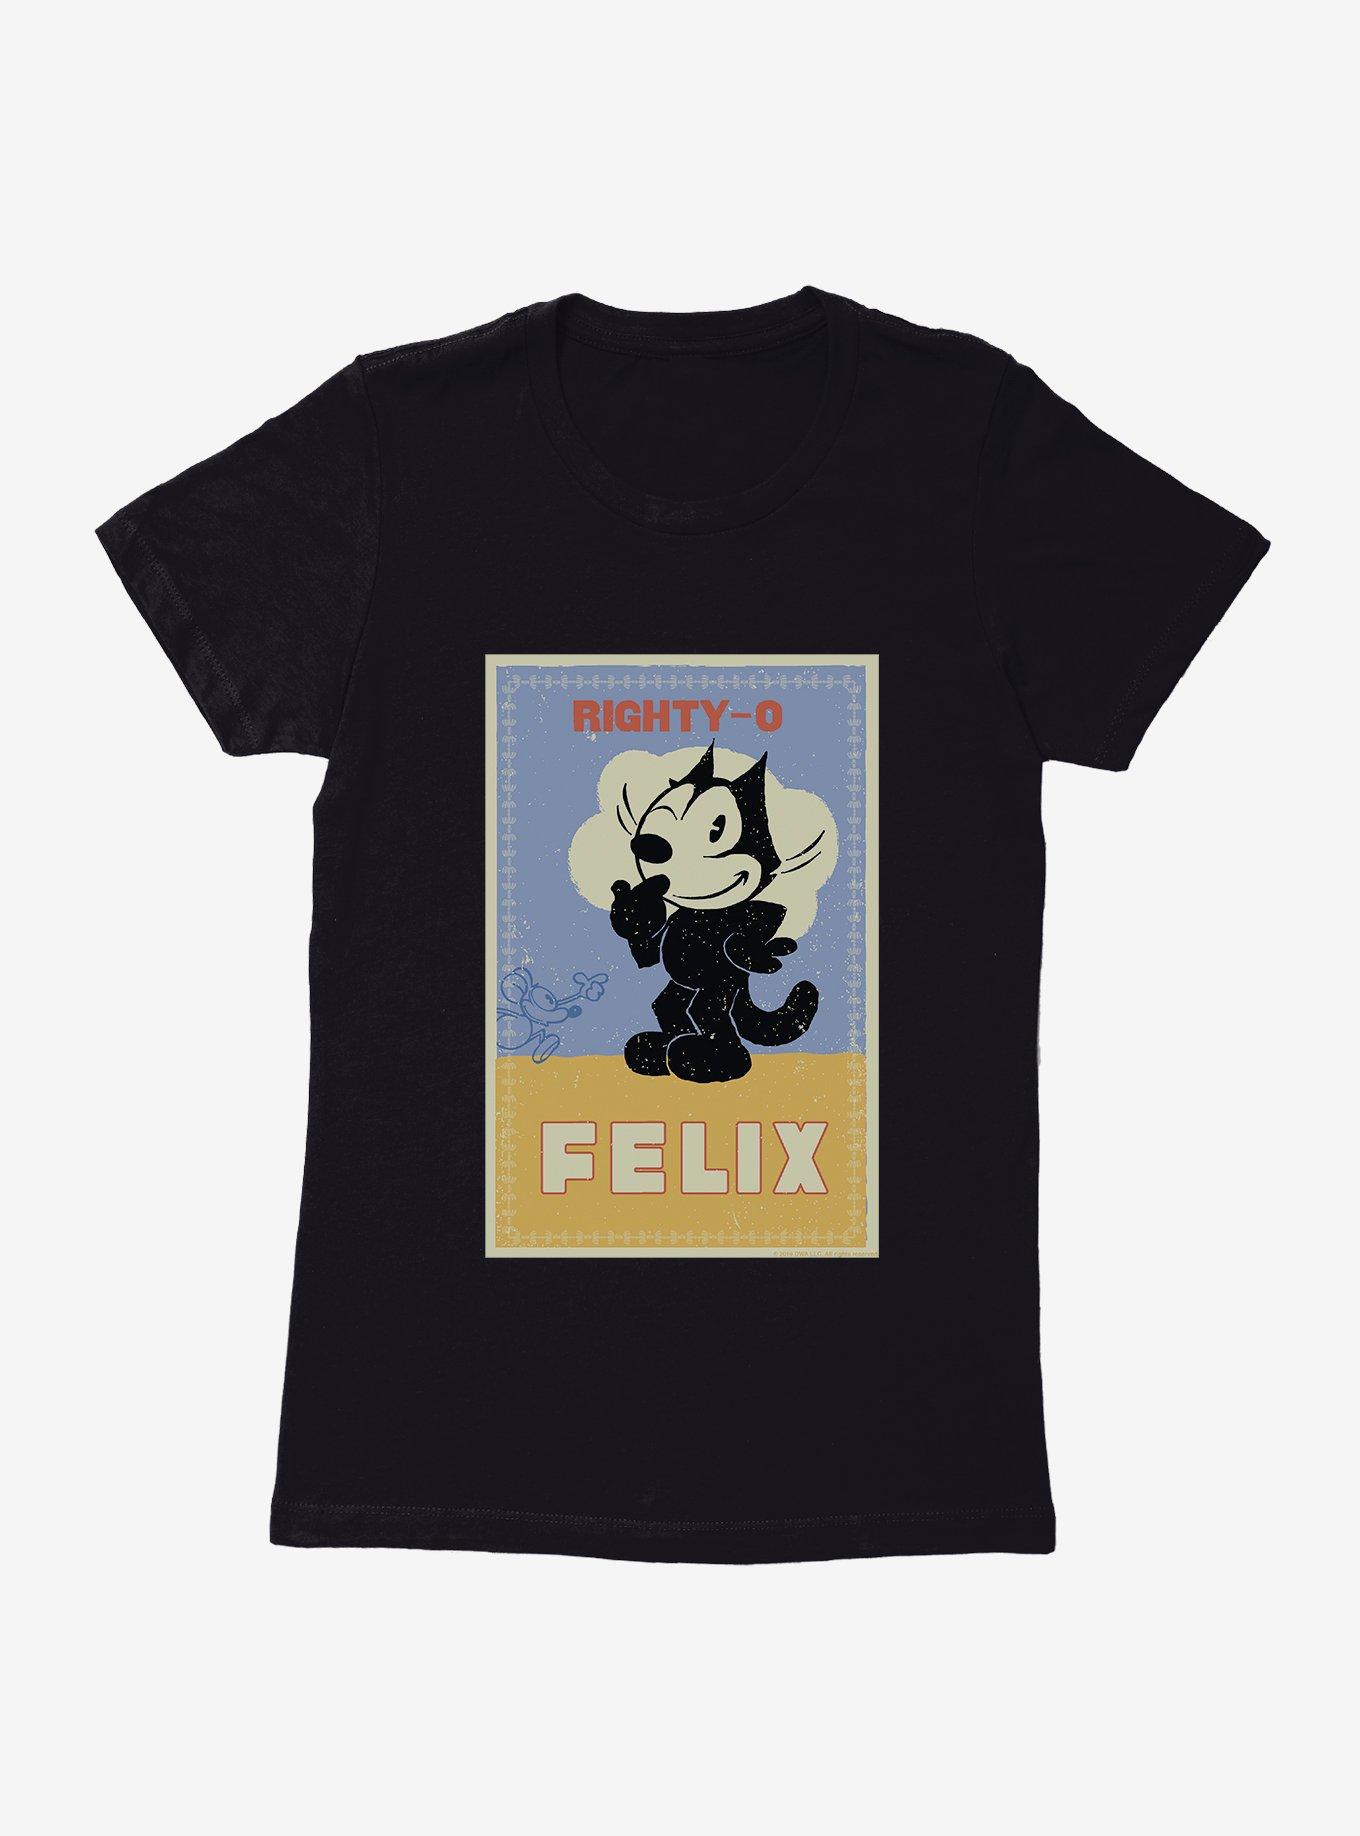 Felix The Cat Mighty-O Womens T-Shirt, BLACK, hi-res